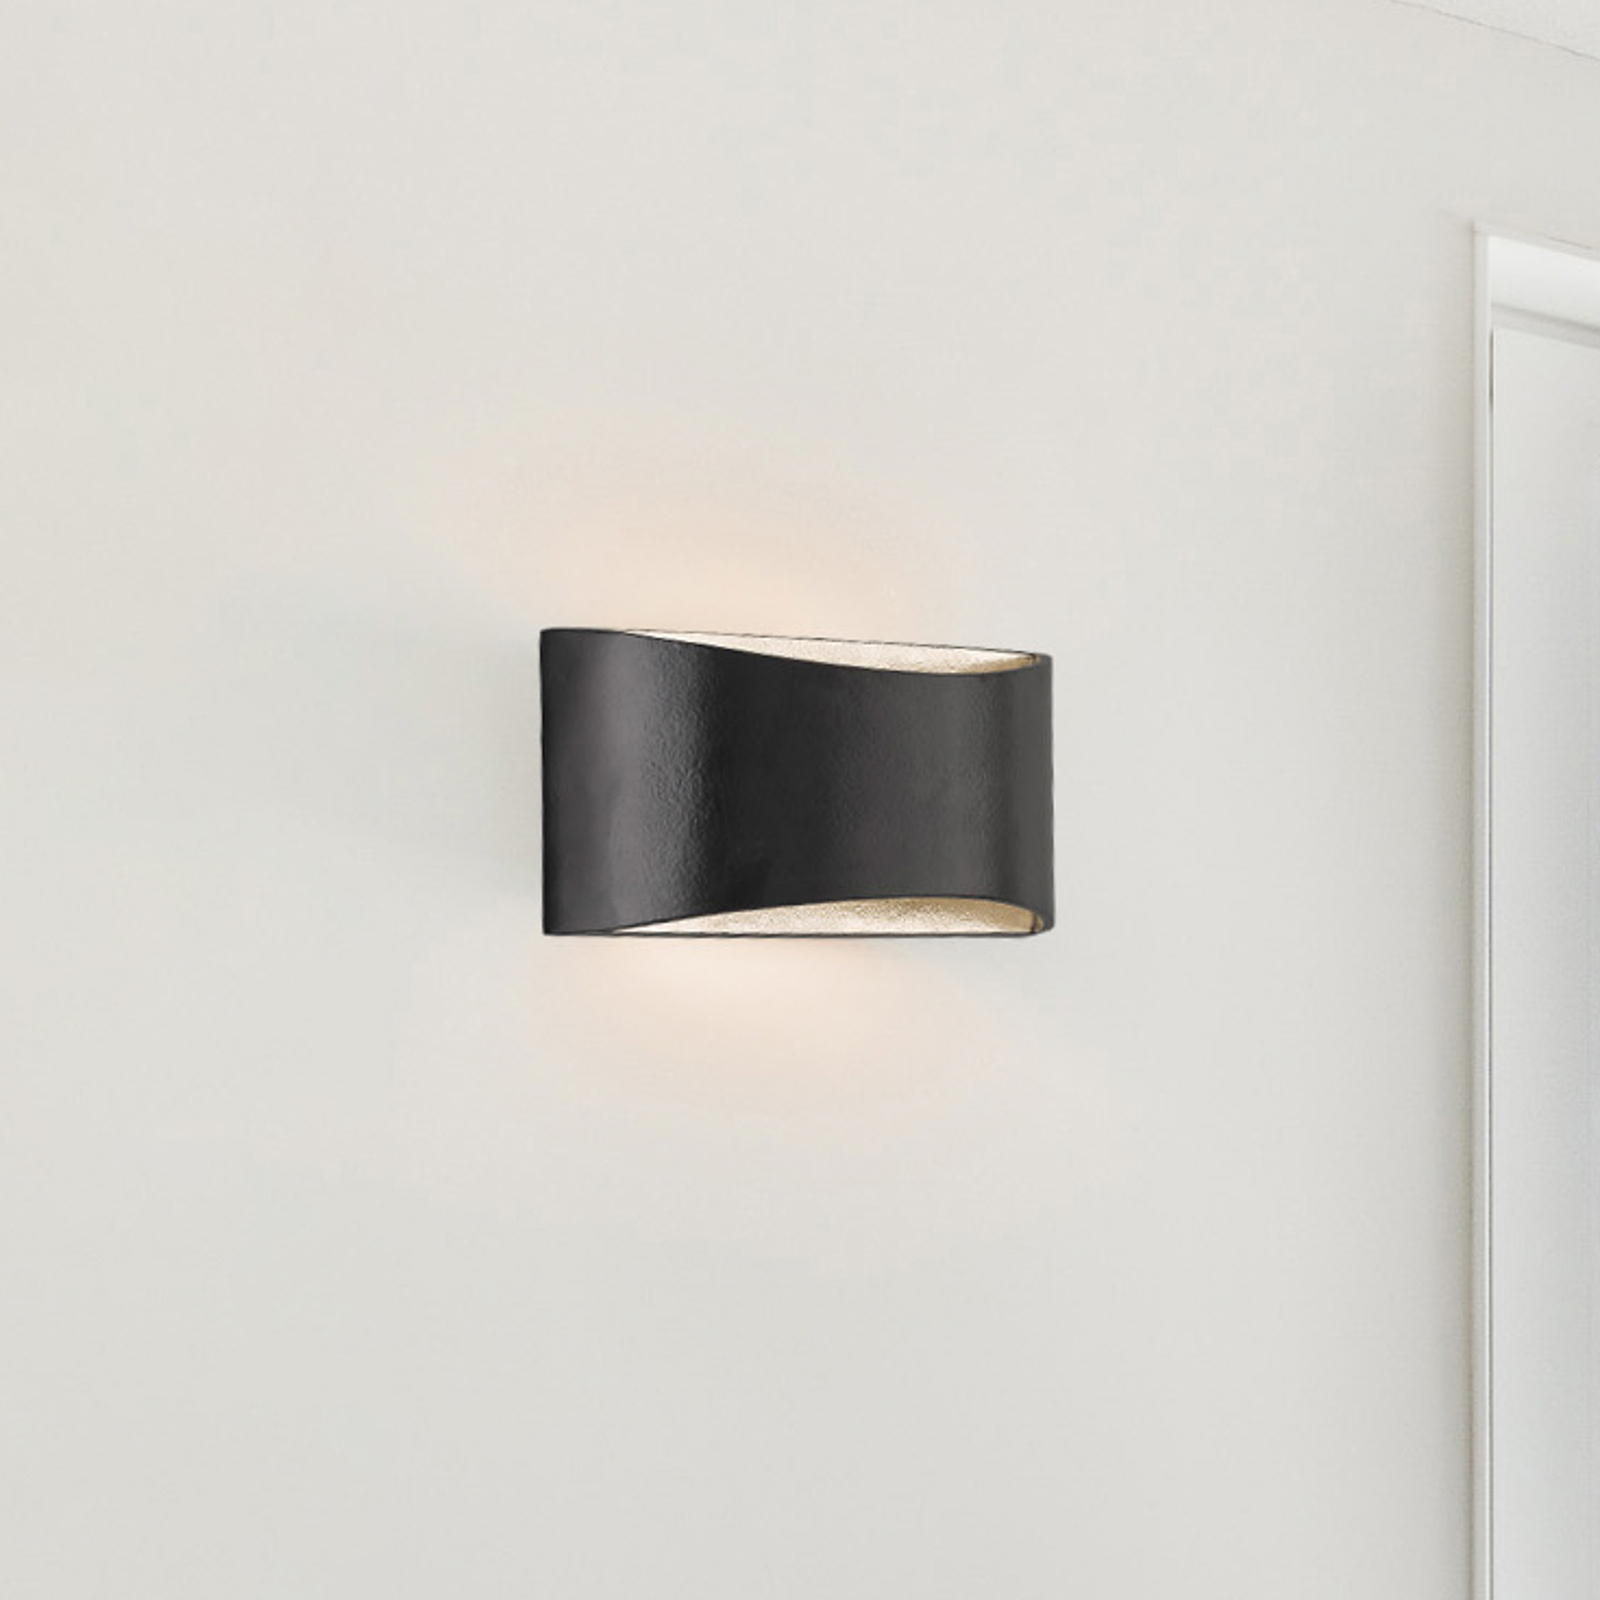 Φωτιστικό τοίχου Arles LED, με δυνατότητα ρύθμισης, μαύρο